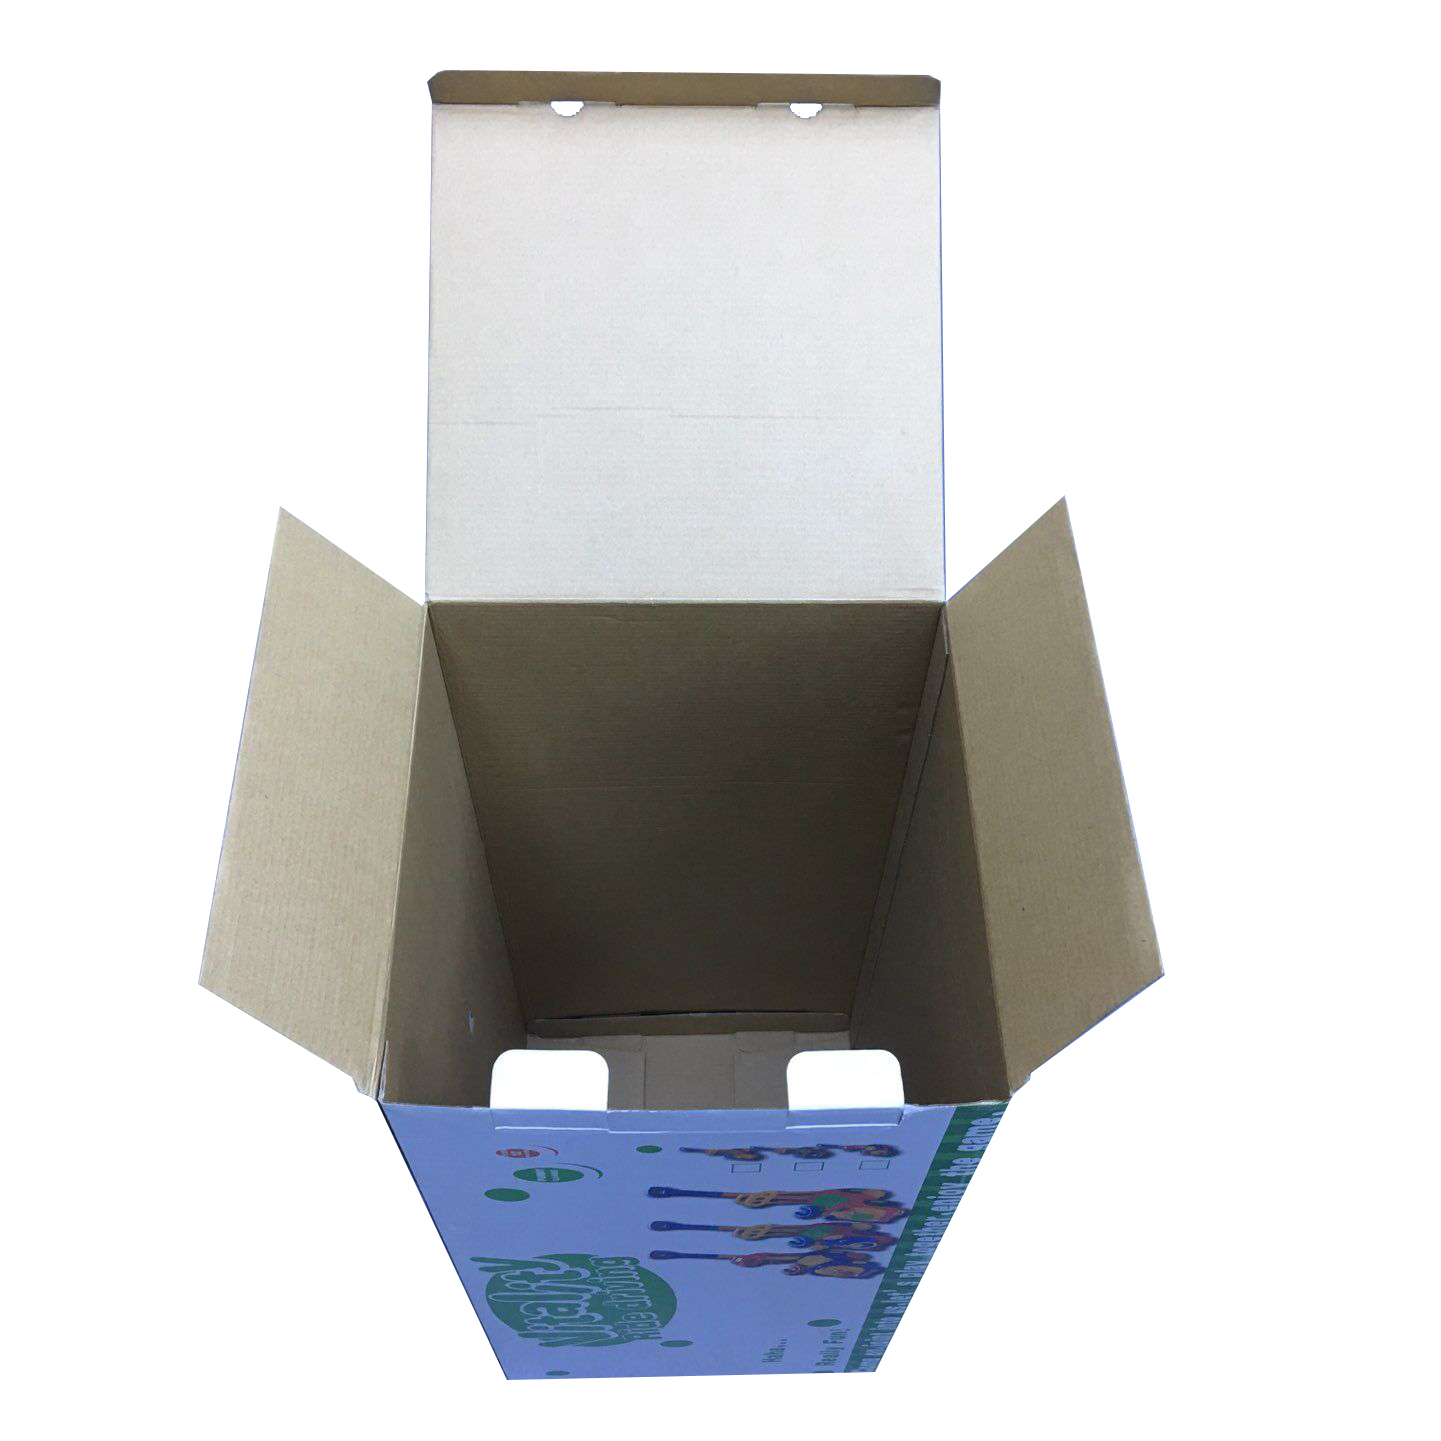 Cajas de Cartón para Juguetes con Tamaño Personalizado